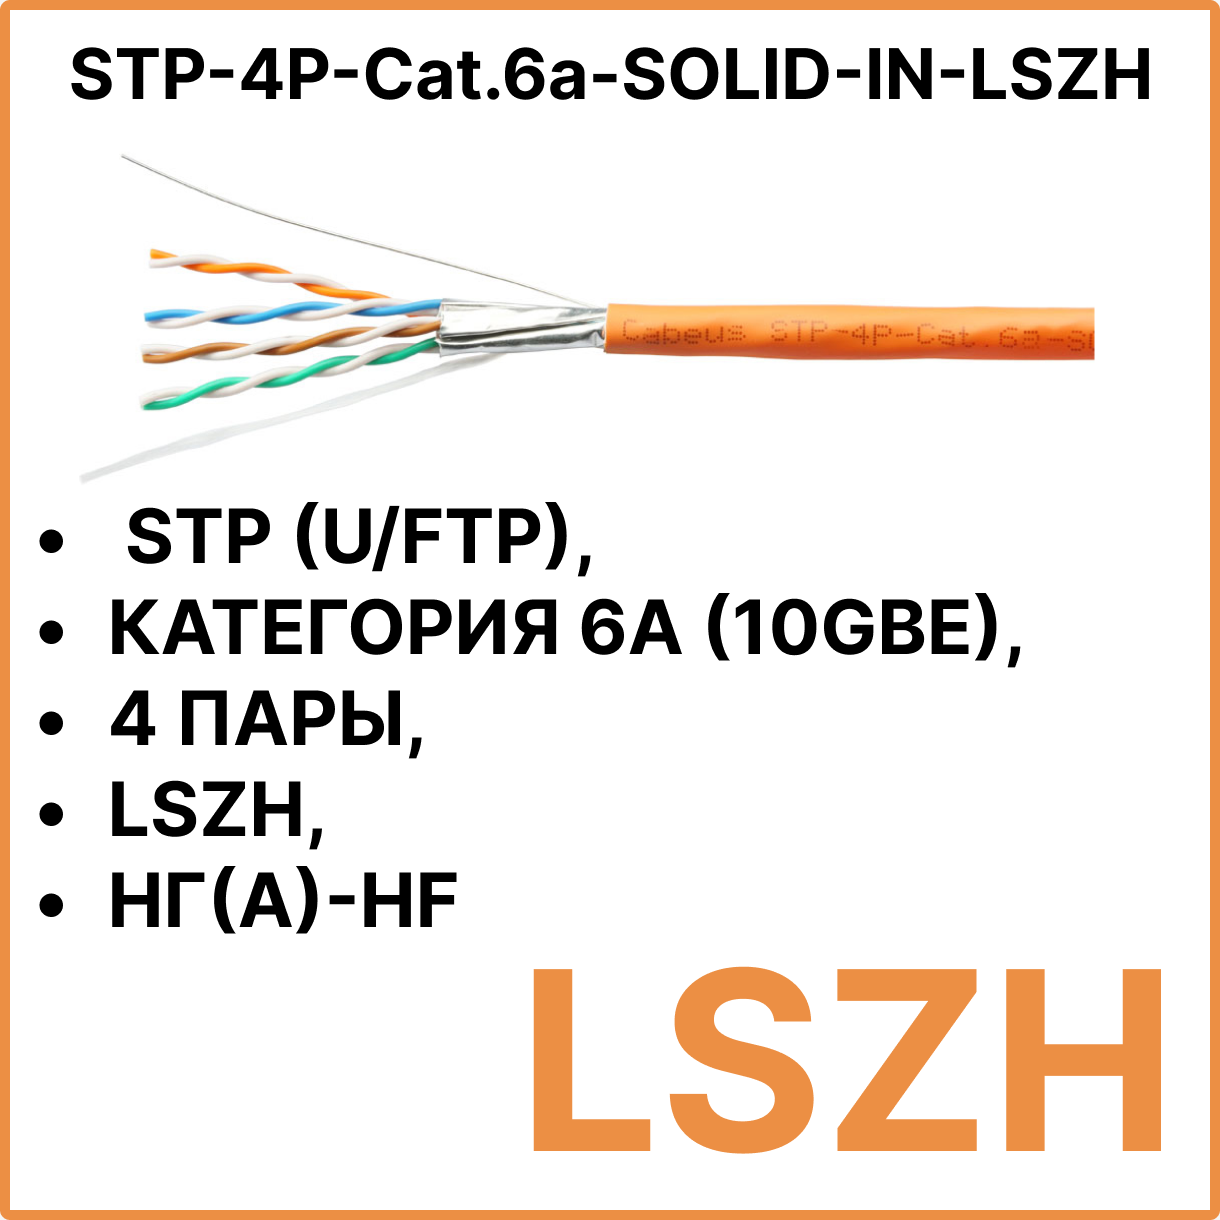 Cabeus STP-4P-Cat.6a-SOLID-IN-LSZH Кабель витая пара экранированная STP (U/FTP), категория 6a (10GBE), 4 пары, 0,57мм (23 AWG), одножильный (solid), каждая пара в экране (фольга) (305 м)